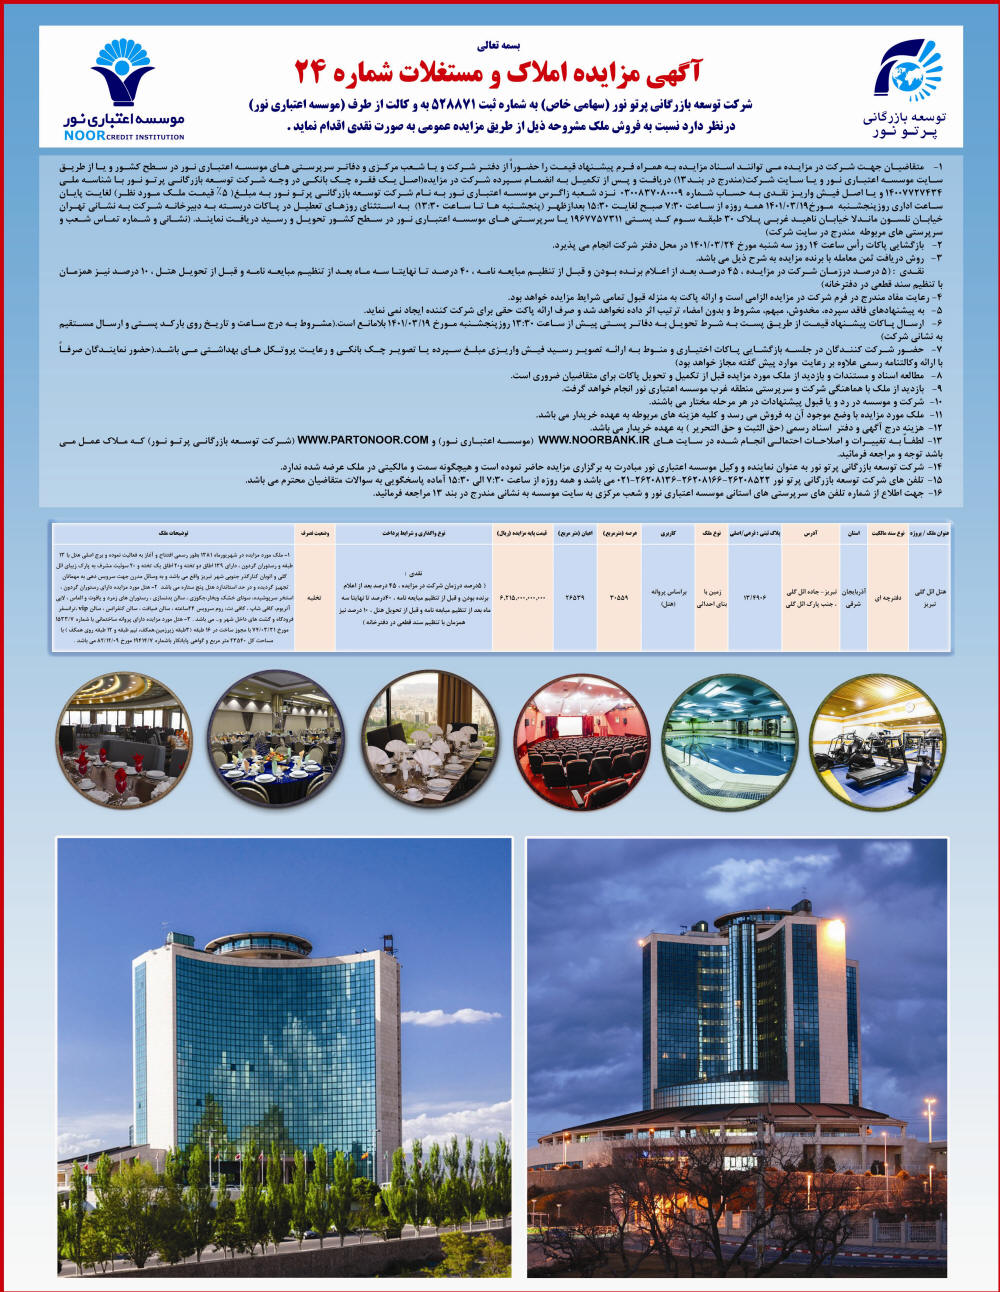 آگهی مزایده املاک و مستغلات شماره 24 چاپ شده در روزنامه همشهری